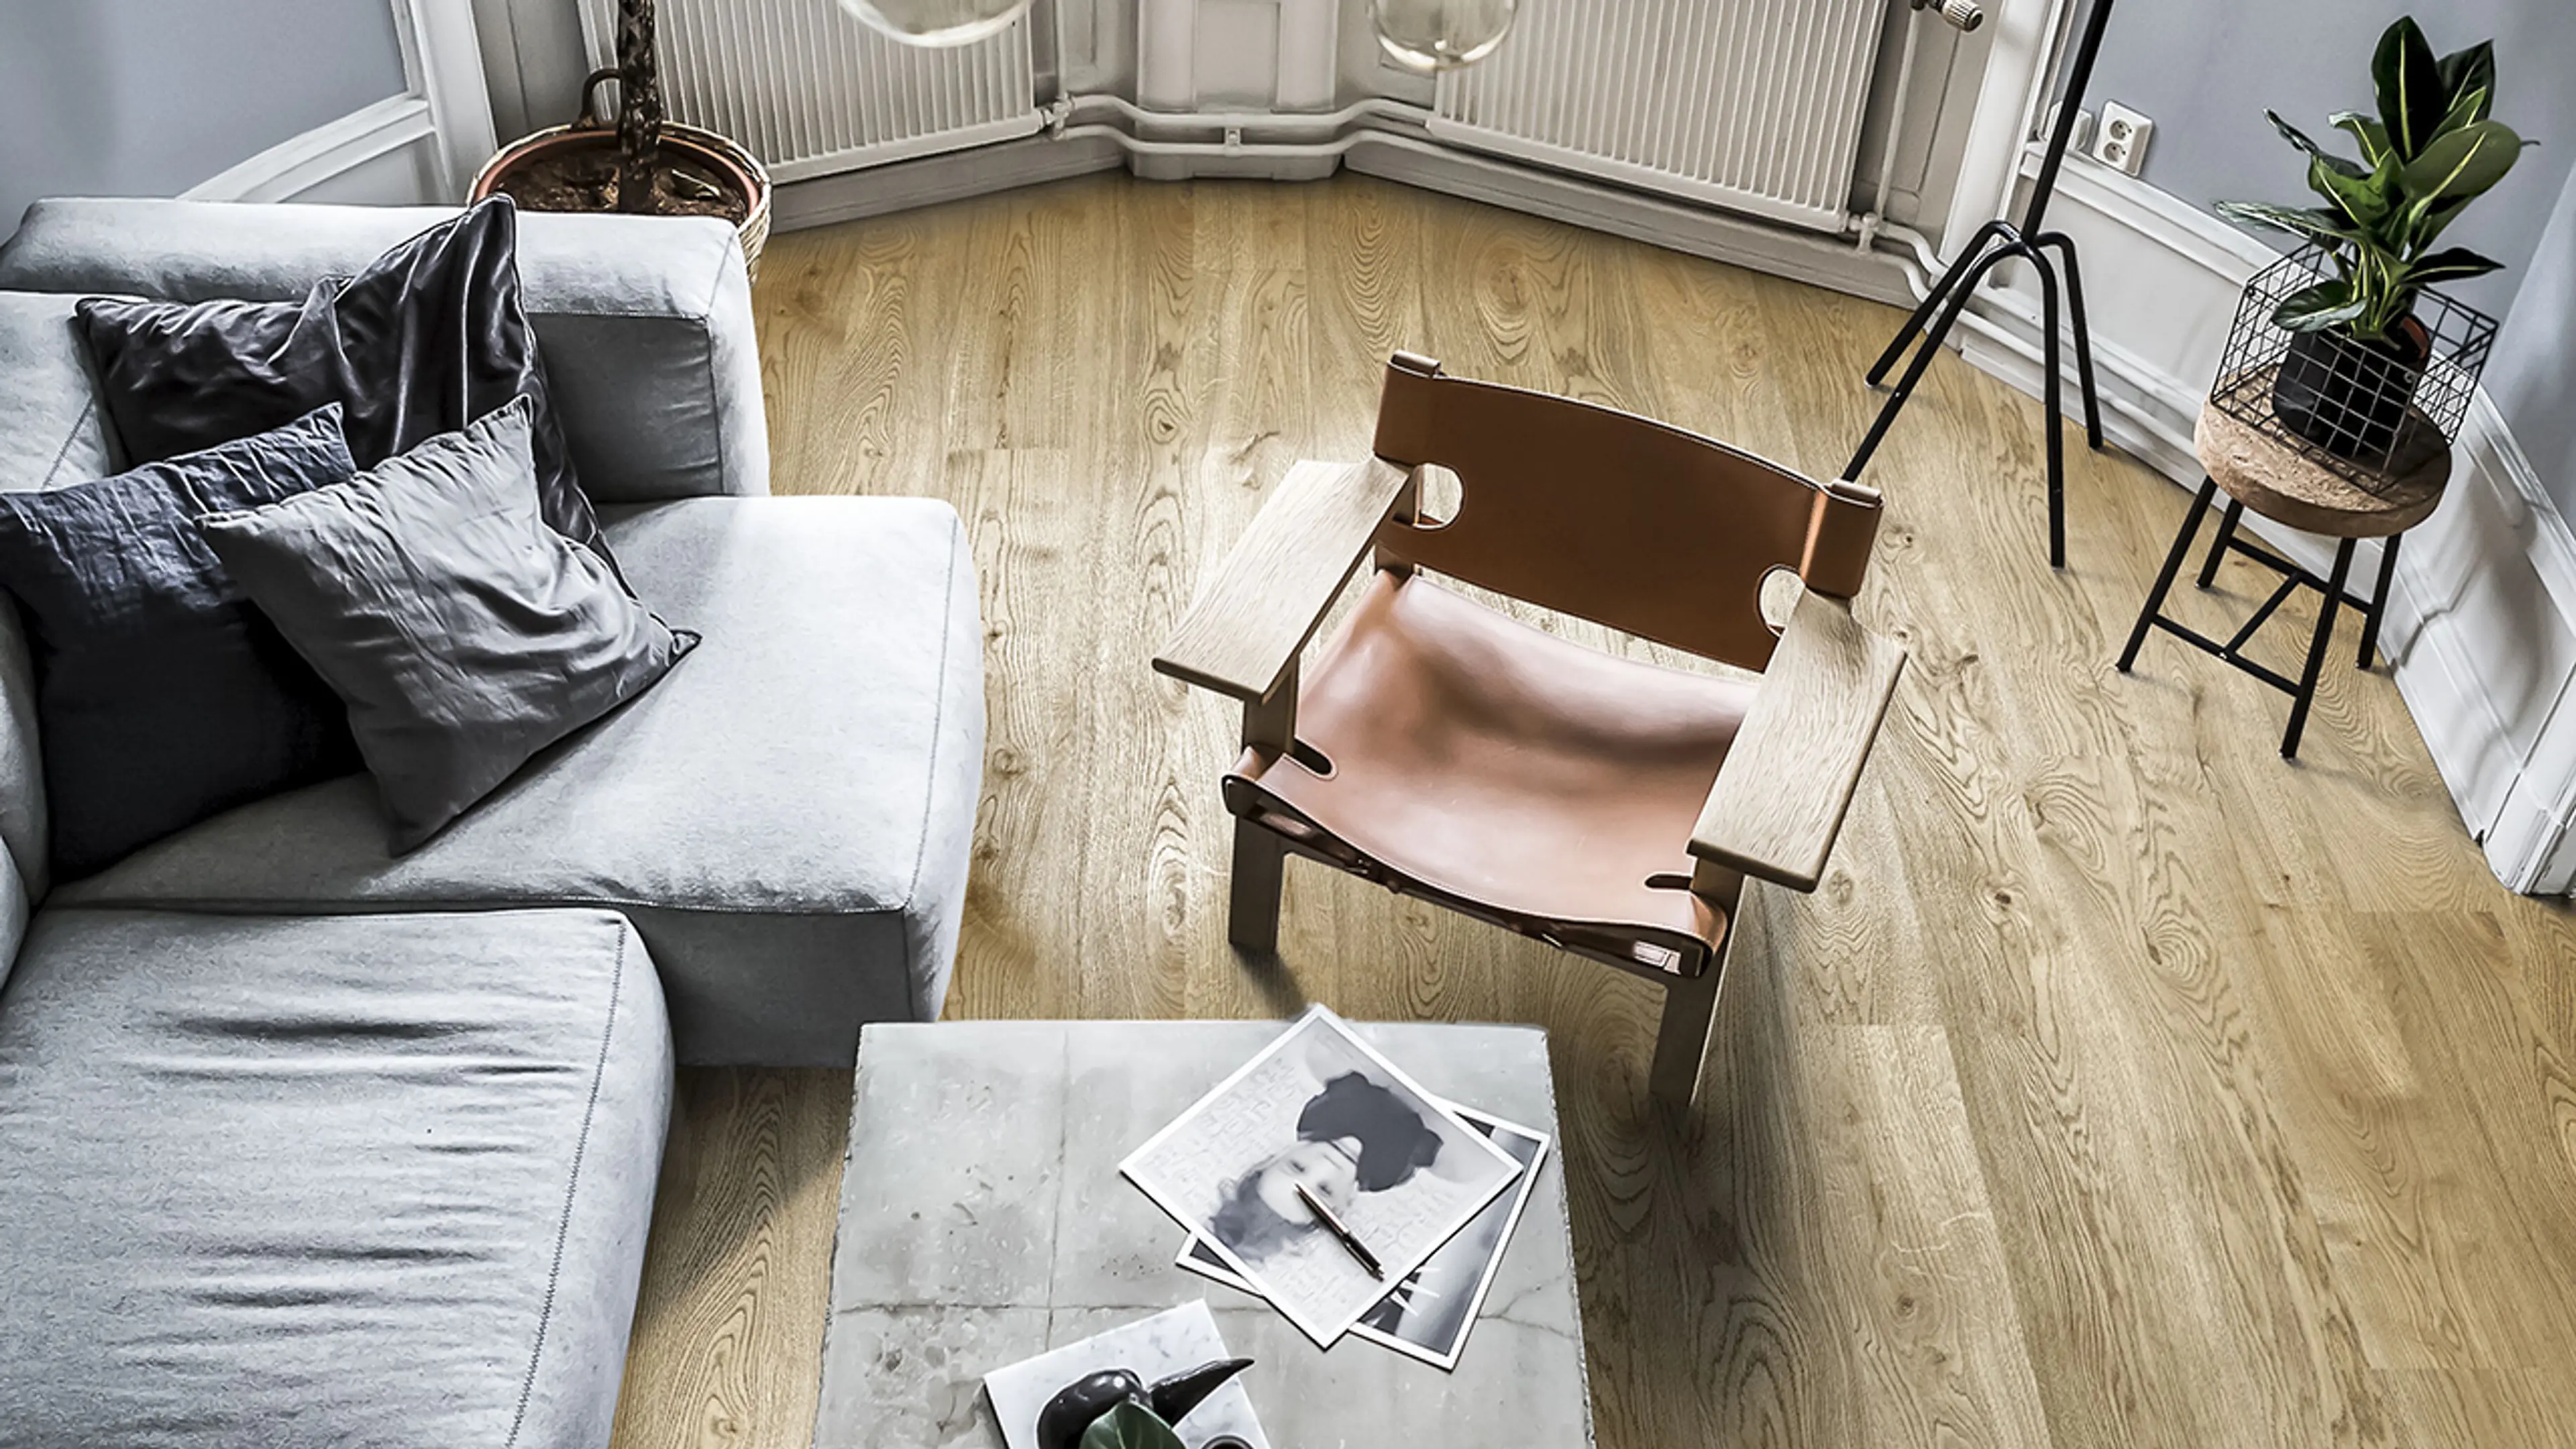 Kährs Aware gulv i stue med grå sofa og spanskestolen.